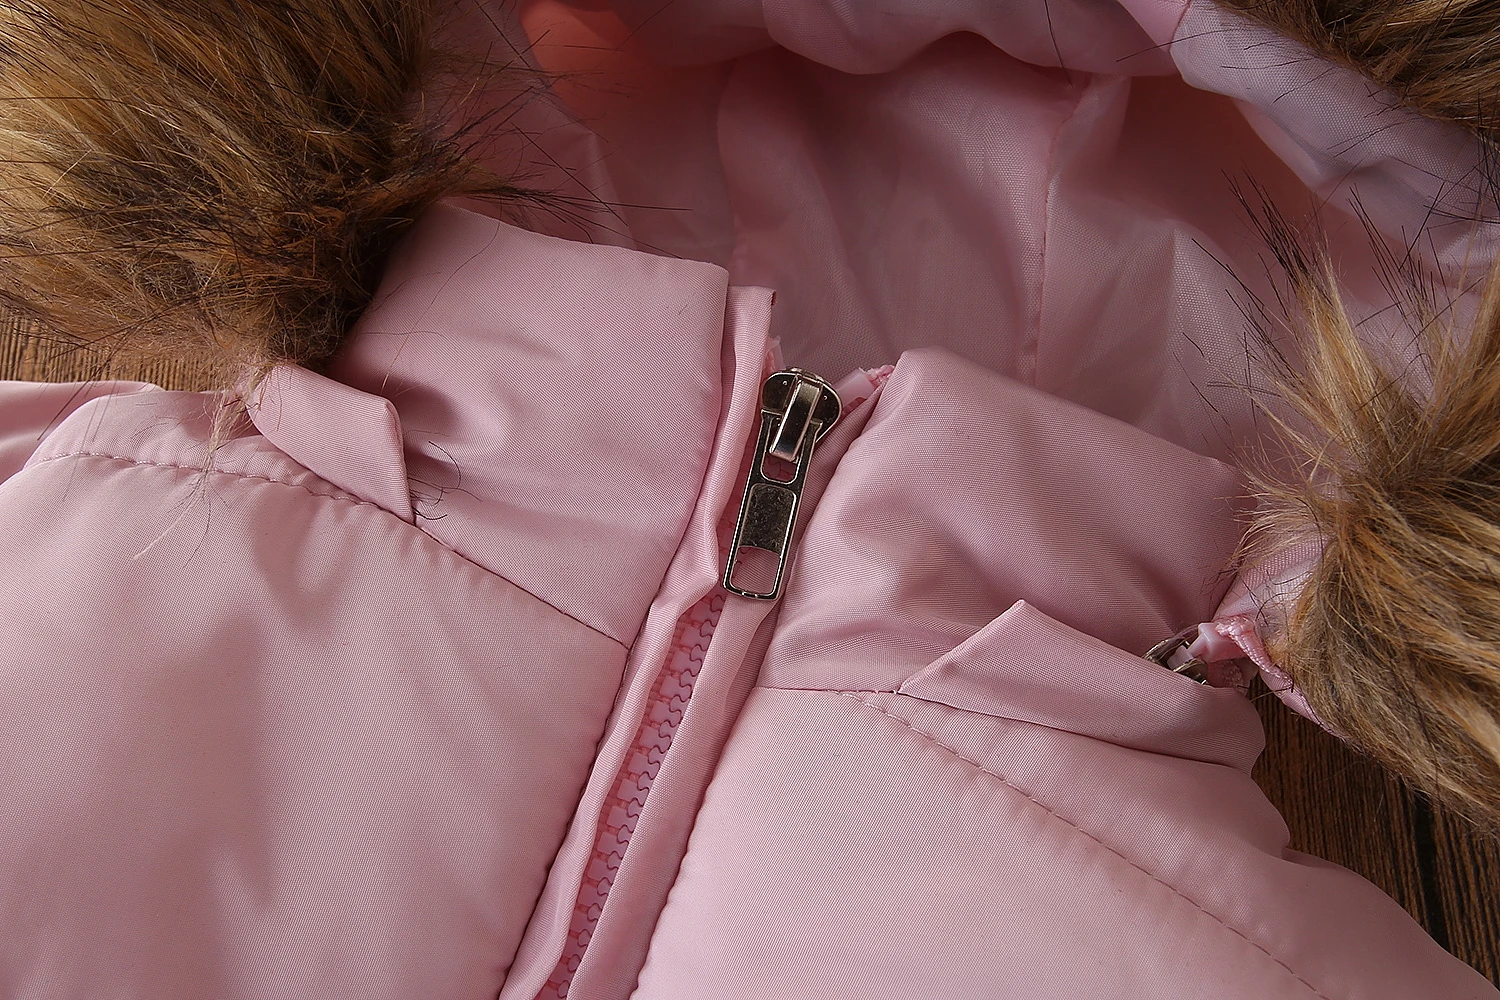 Розовый зимний Плотный Комбинезон для маленьких девочек; Верхняя одежда; комбинезон; теплый Пуховый комбинезон